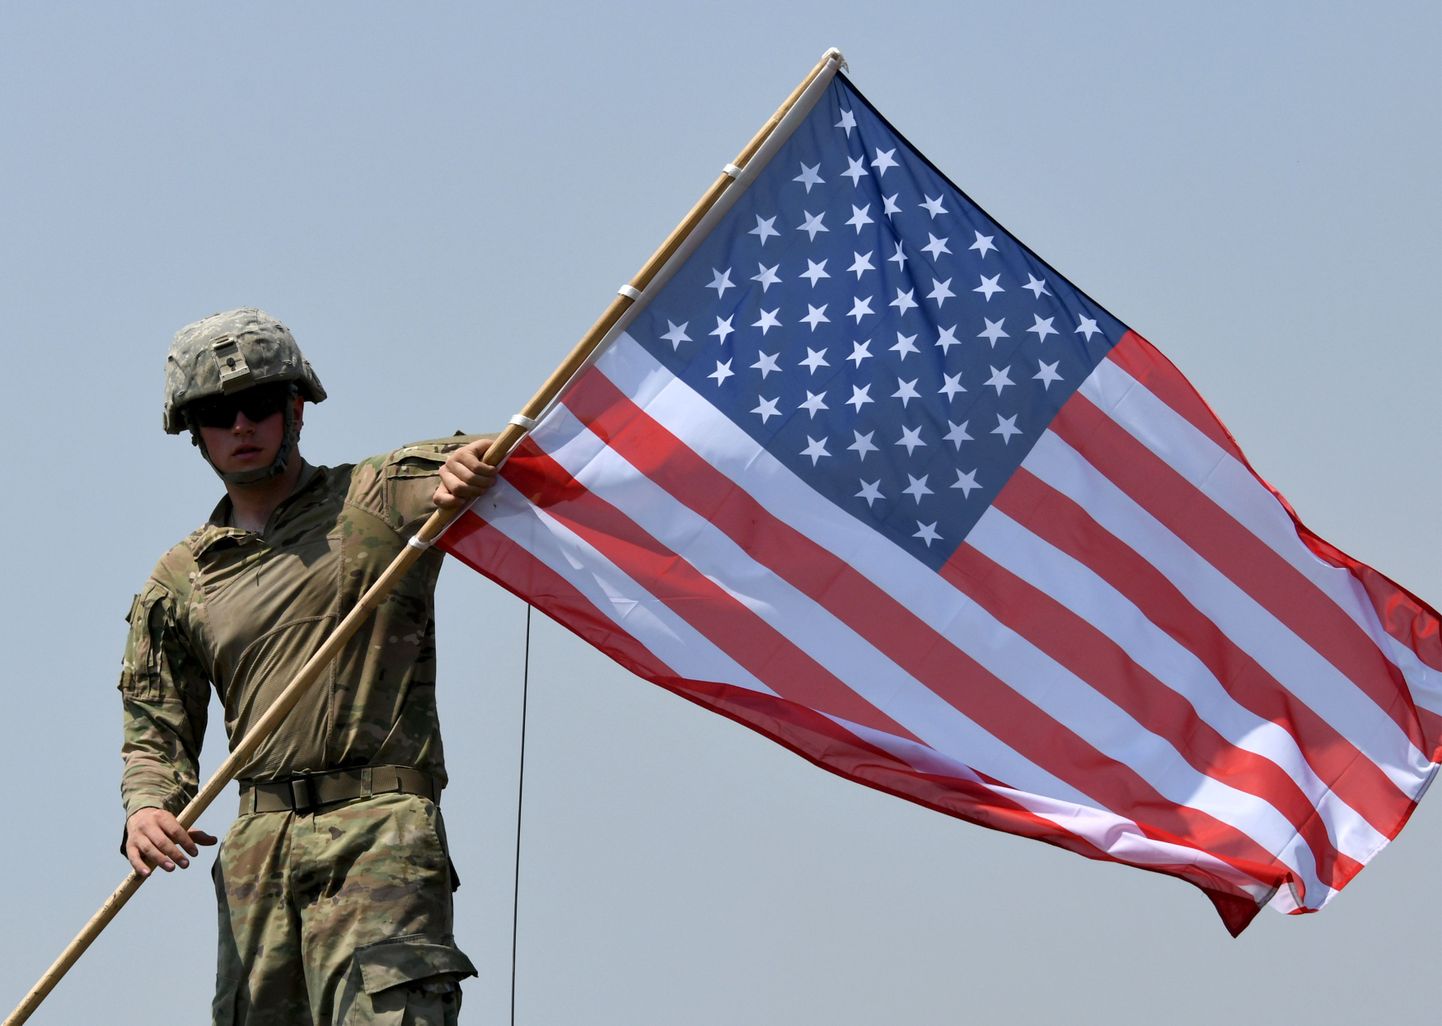 USA sõjaväelane USA lippu kandmas.